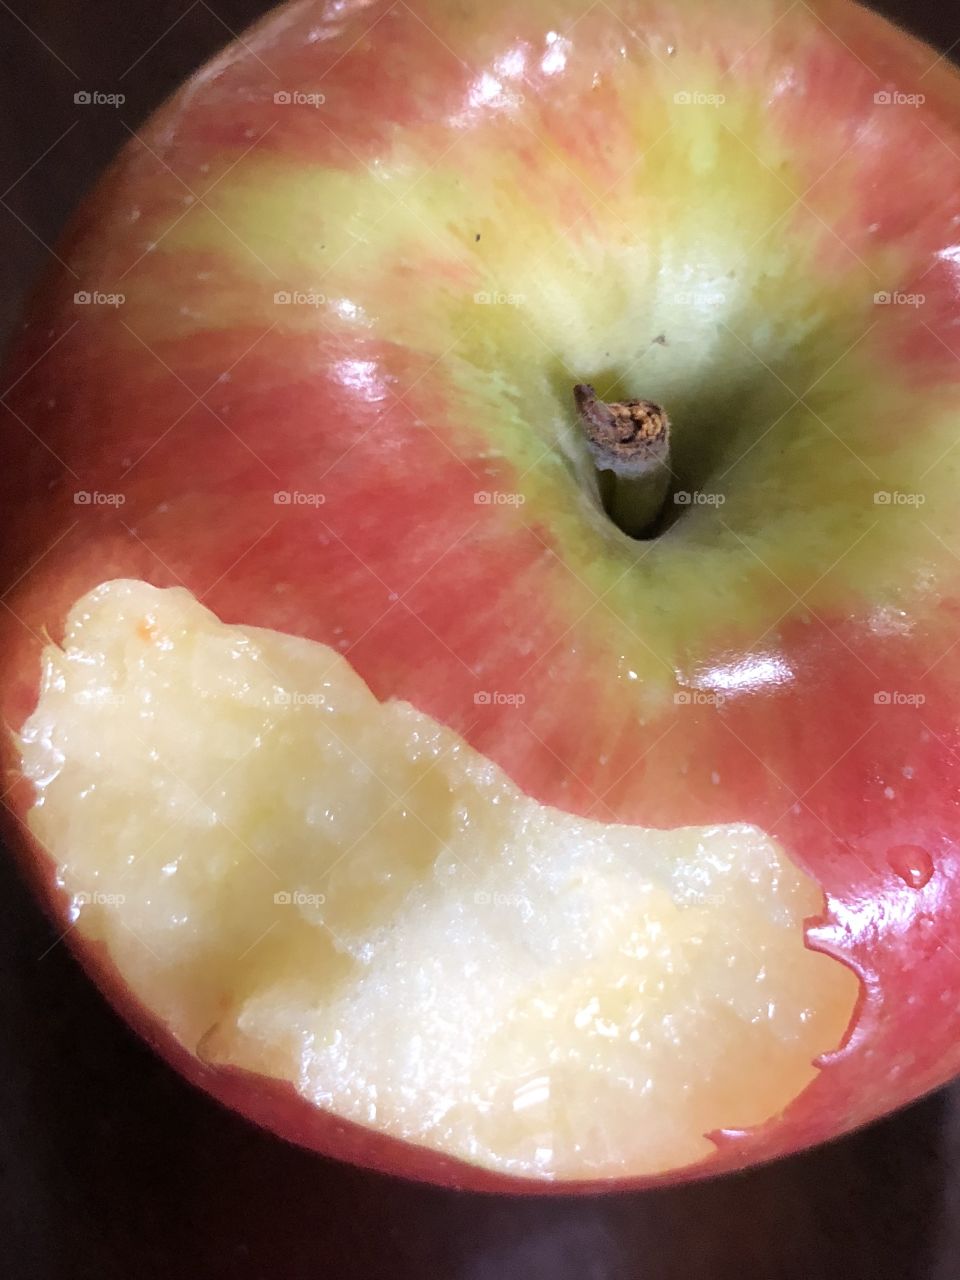 A bitten apple 